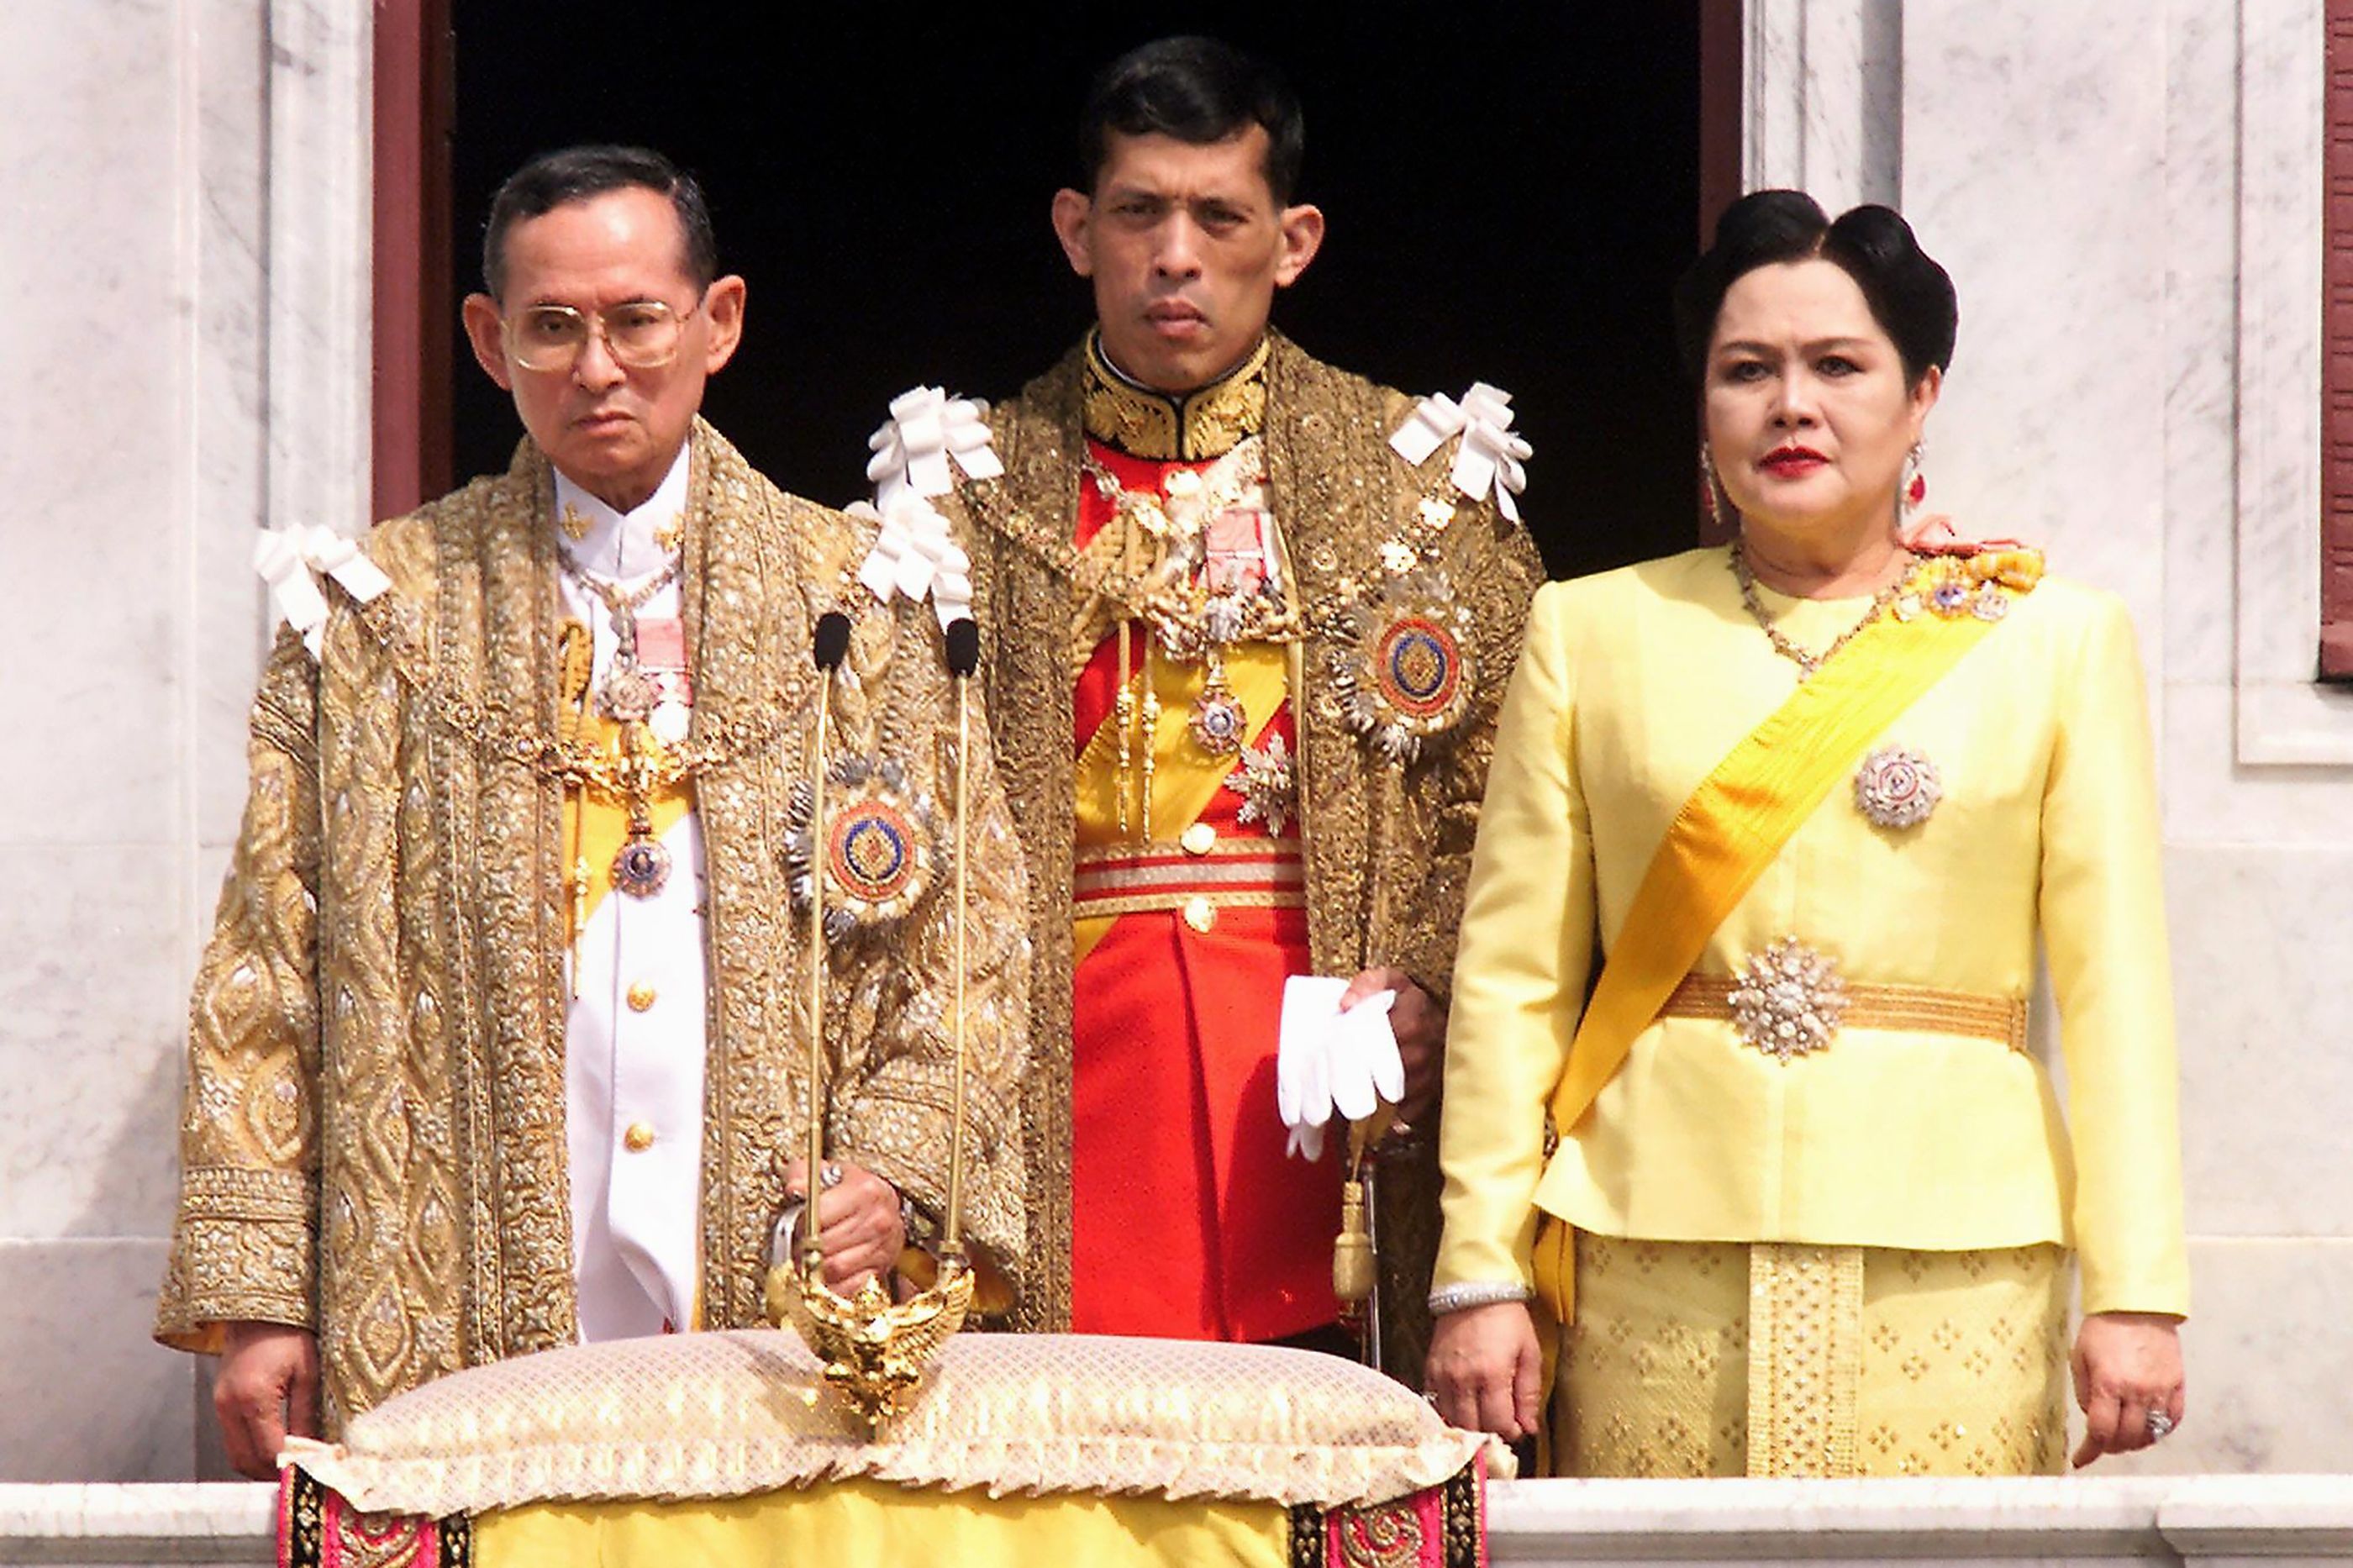 ديسمبر 1999 الملك التايلندي بهوميبول أدولياديج وولي العهد مها فاجيرالونغكورن والملكة سيريكيت